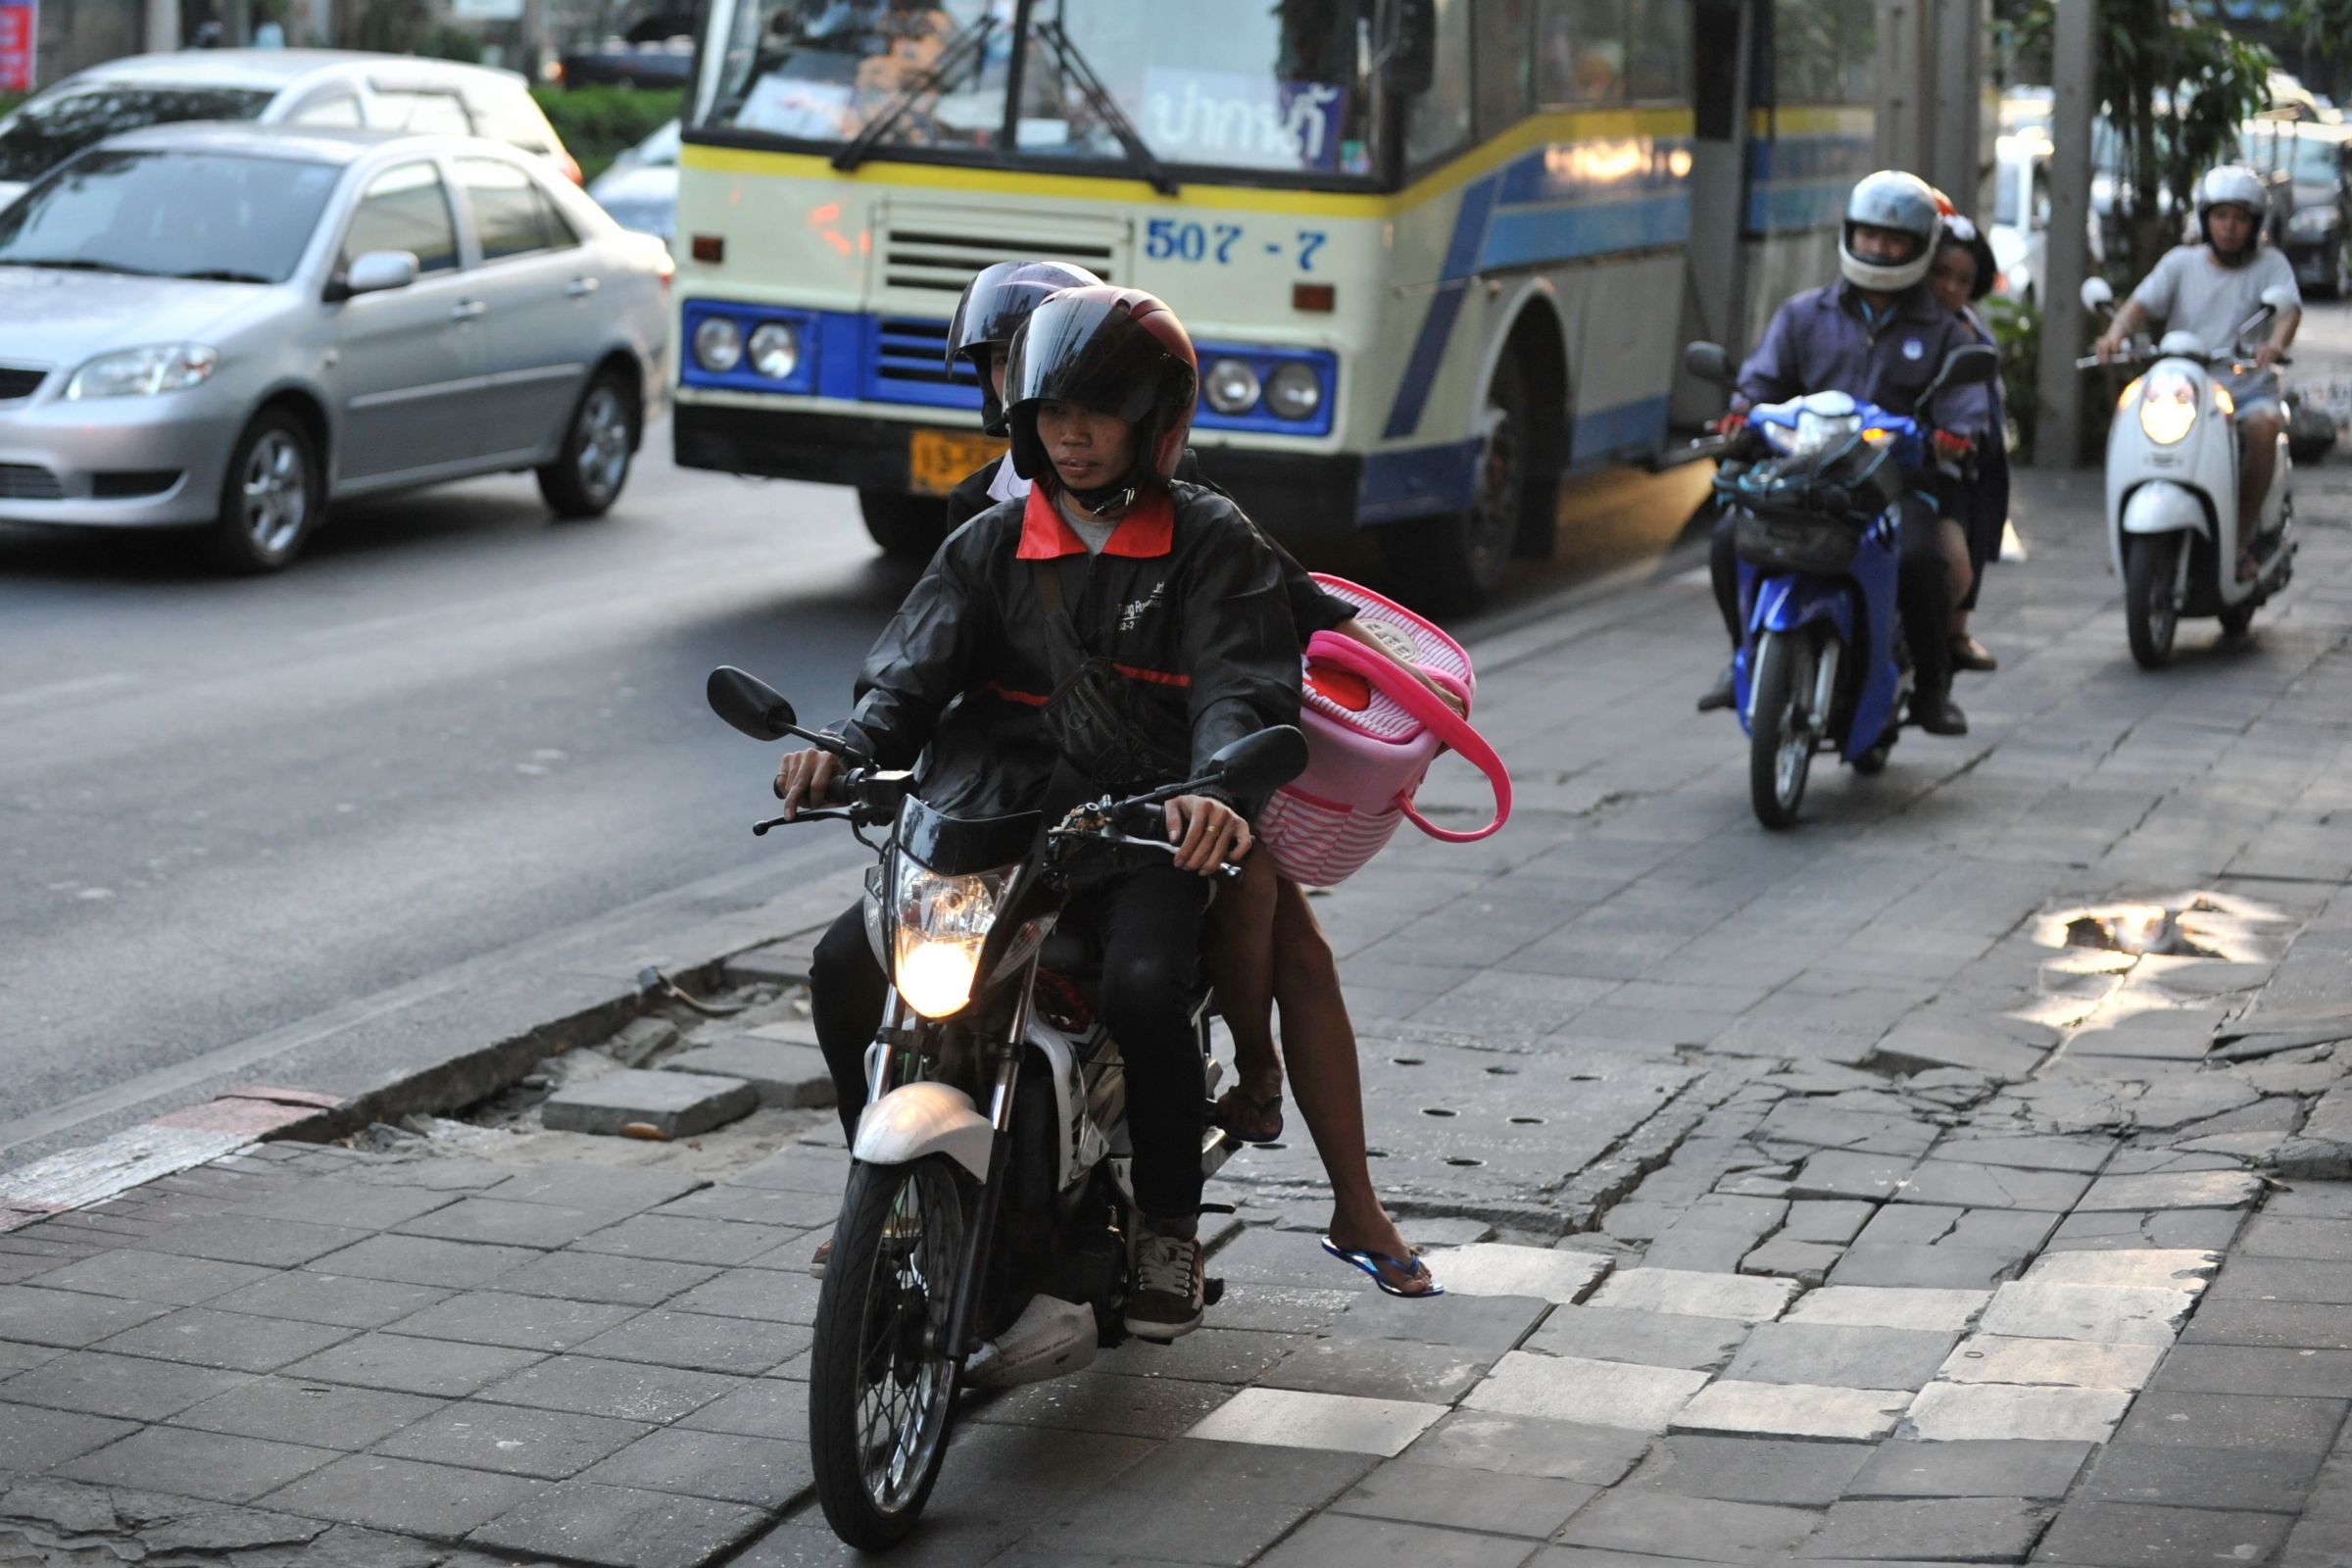 Embora seja uma prática existente no Brasil, trafegar com moto em passarelas, calçadas e acostamento é proibido pelo Código de trânsito Brasileiro.